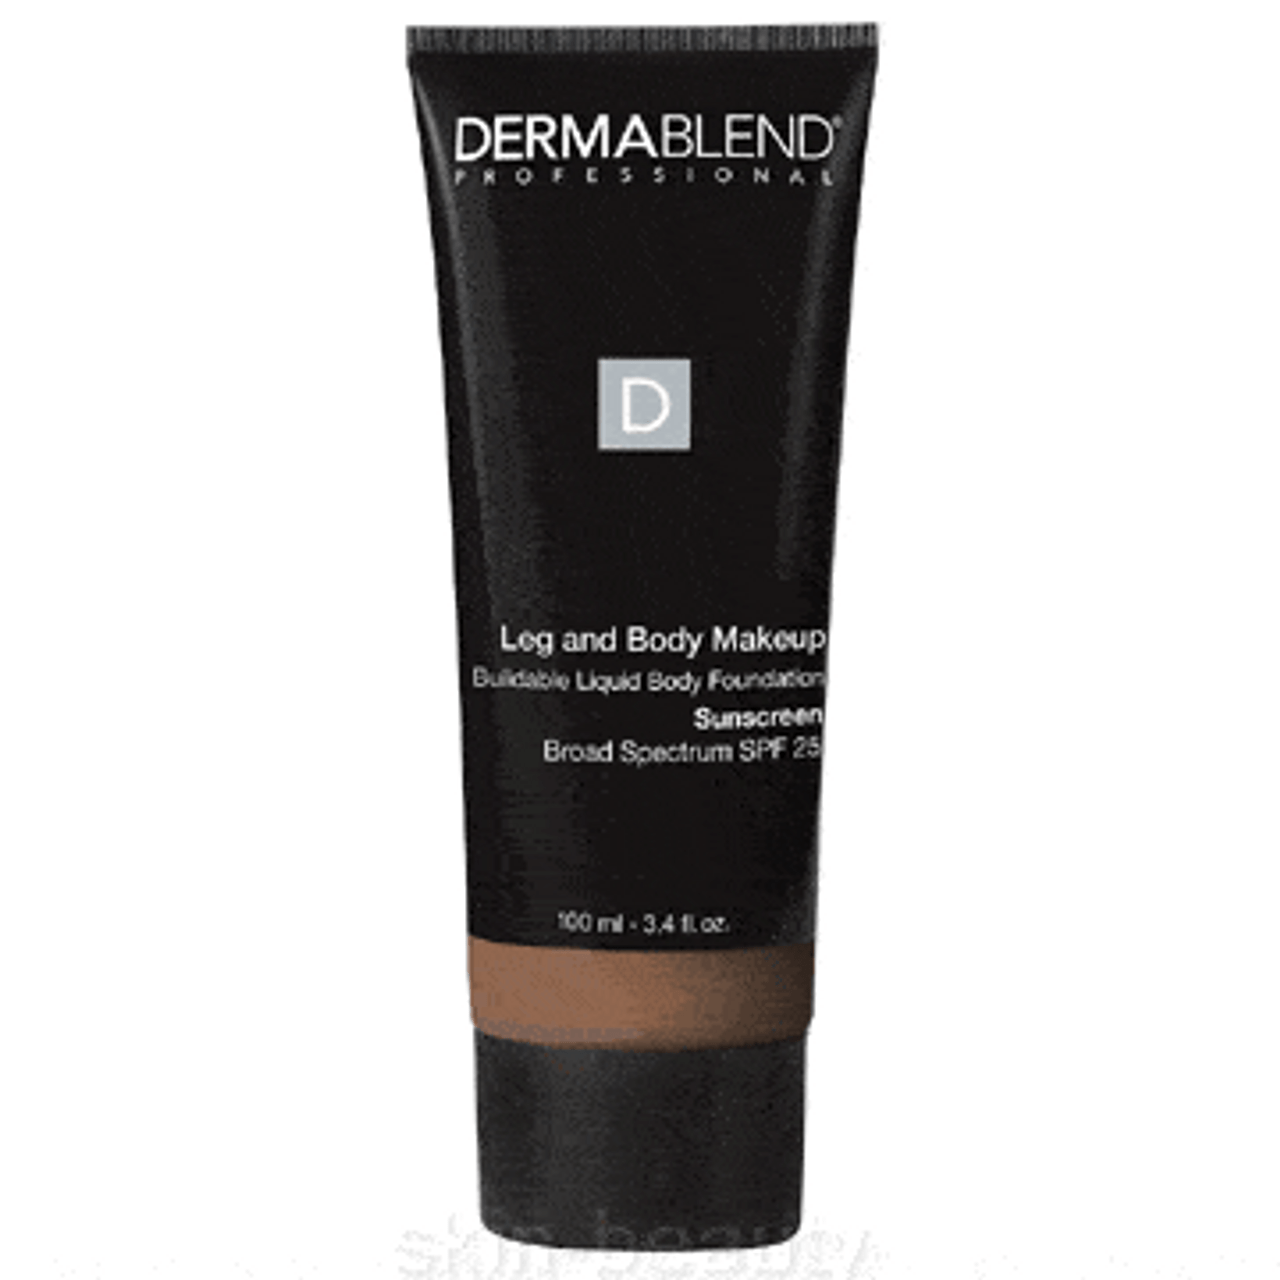 Dermablend Leg And Body Makeup SPF 25 - 3.4 oz - Deep Golden 70W (26156) -Exp11/2018